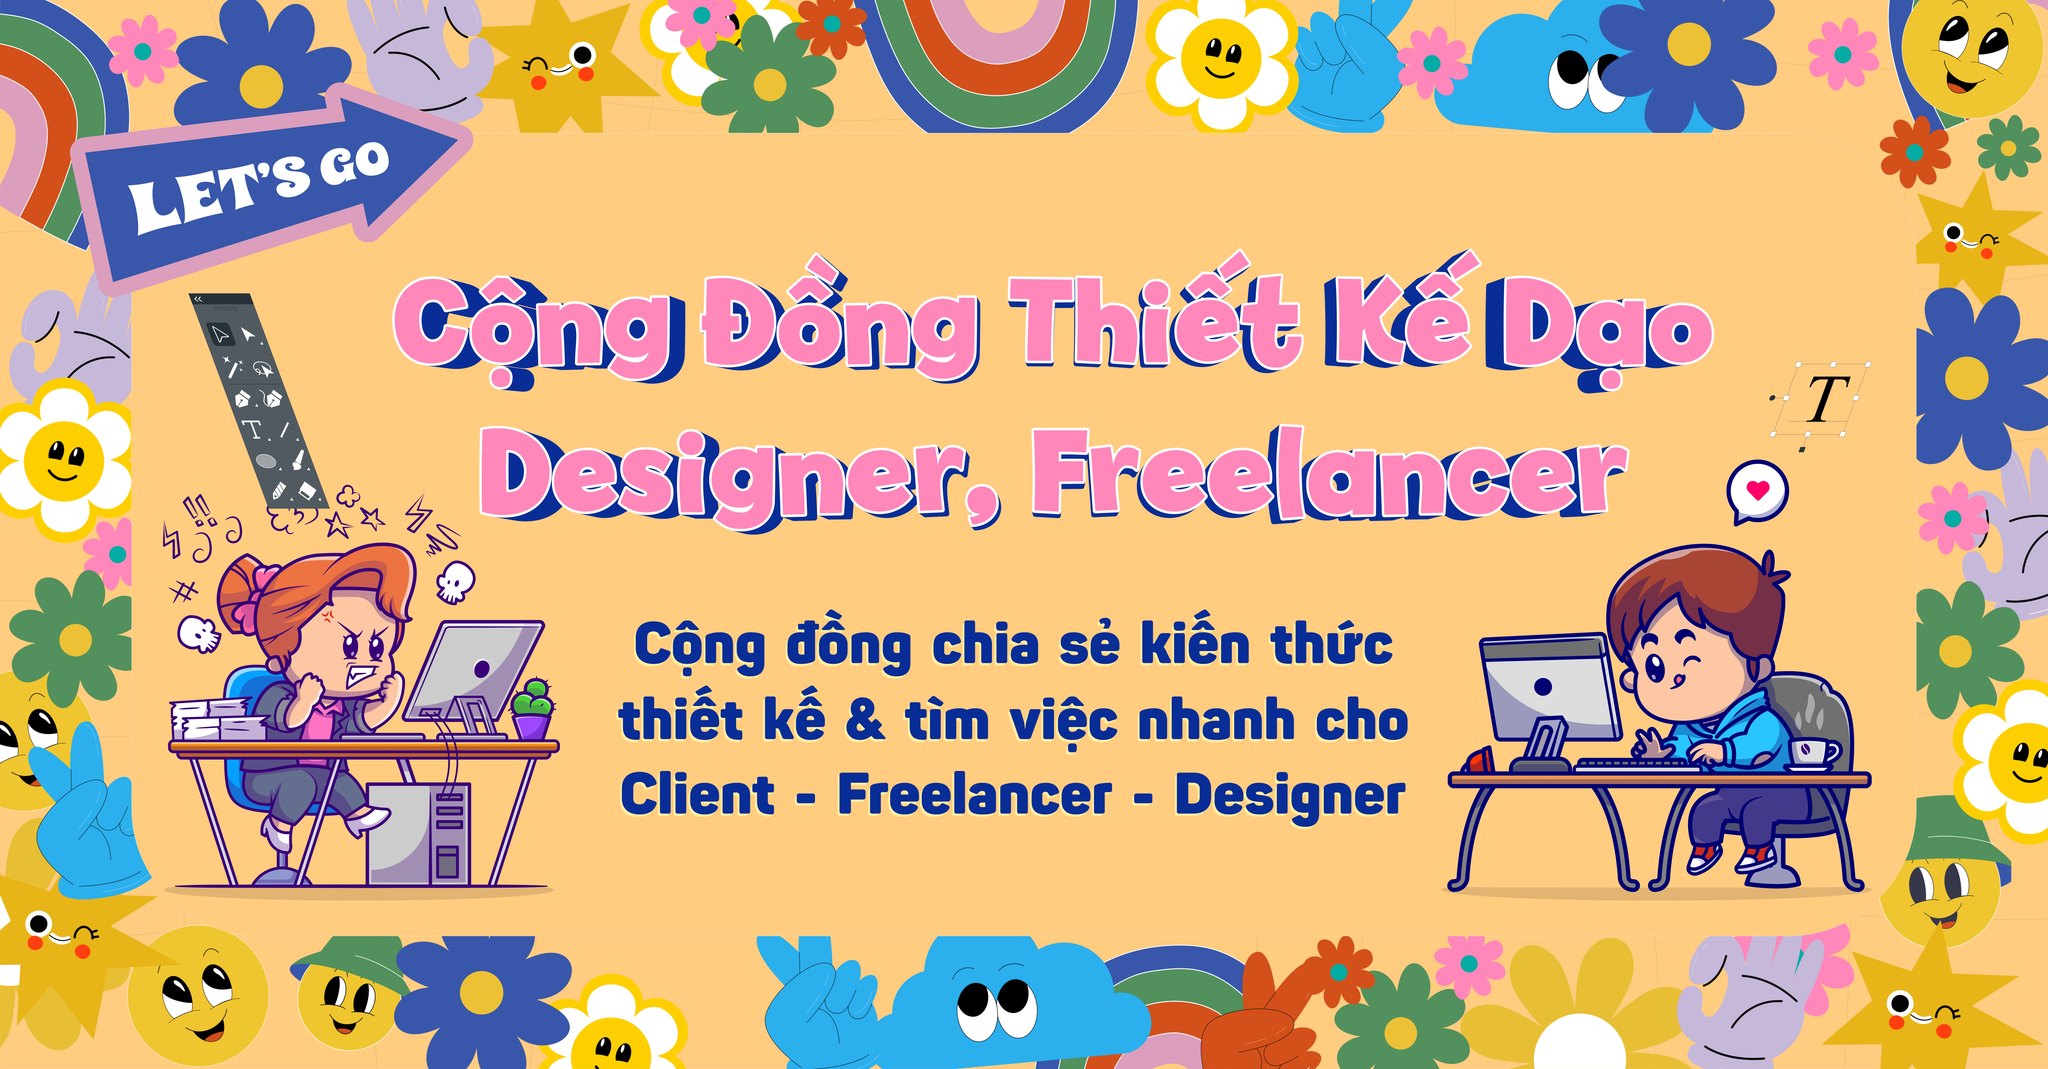 Cộng đồng thiết kế dạo Designer, Freelancer